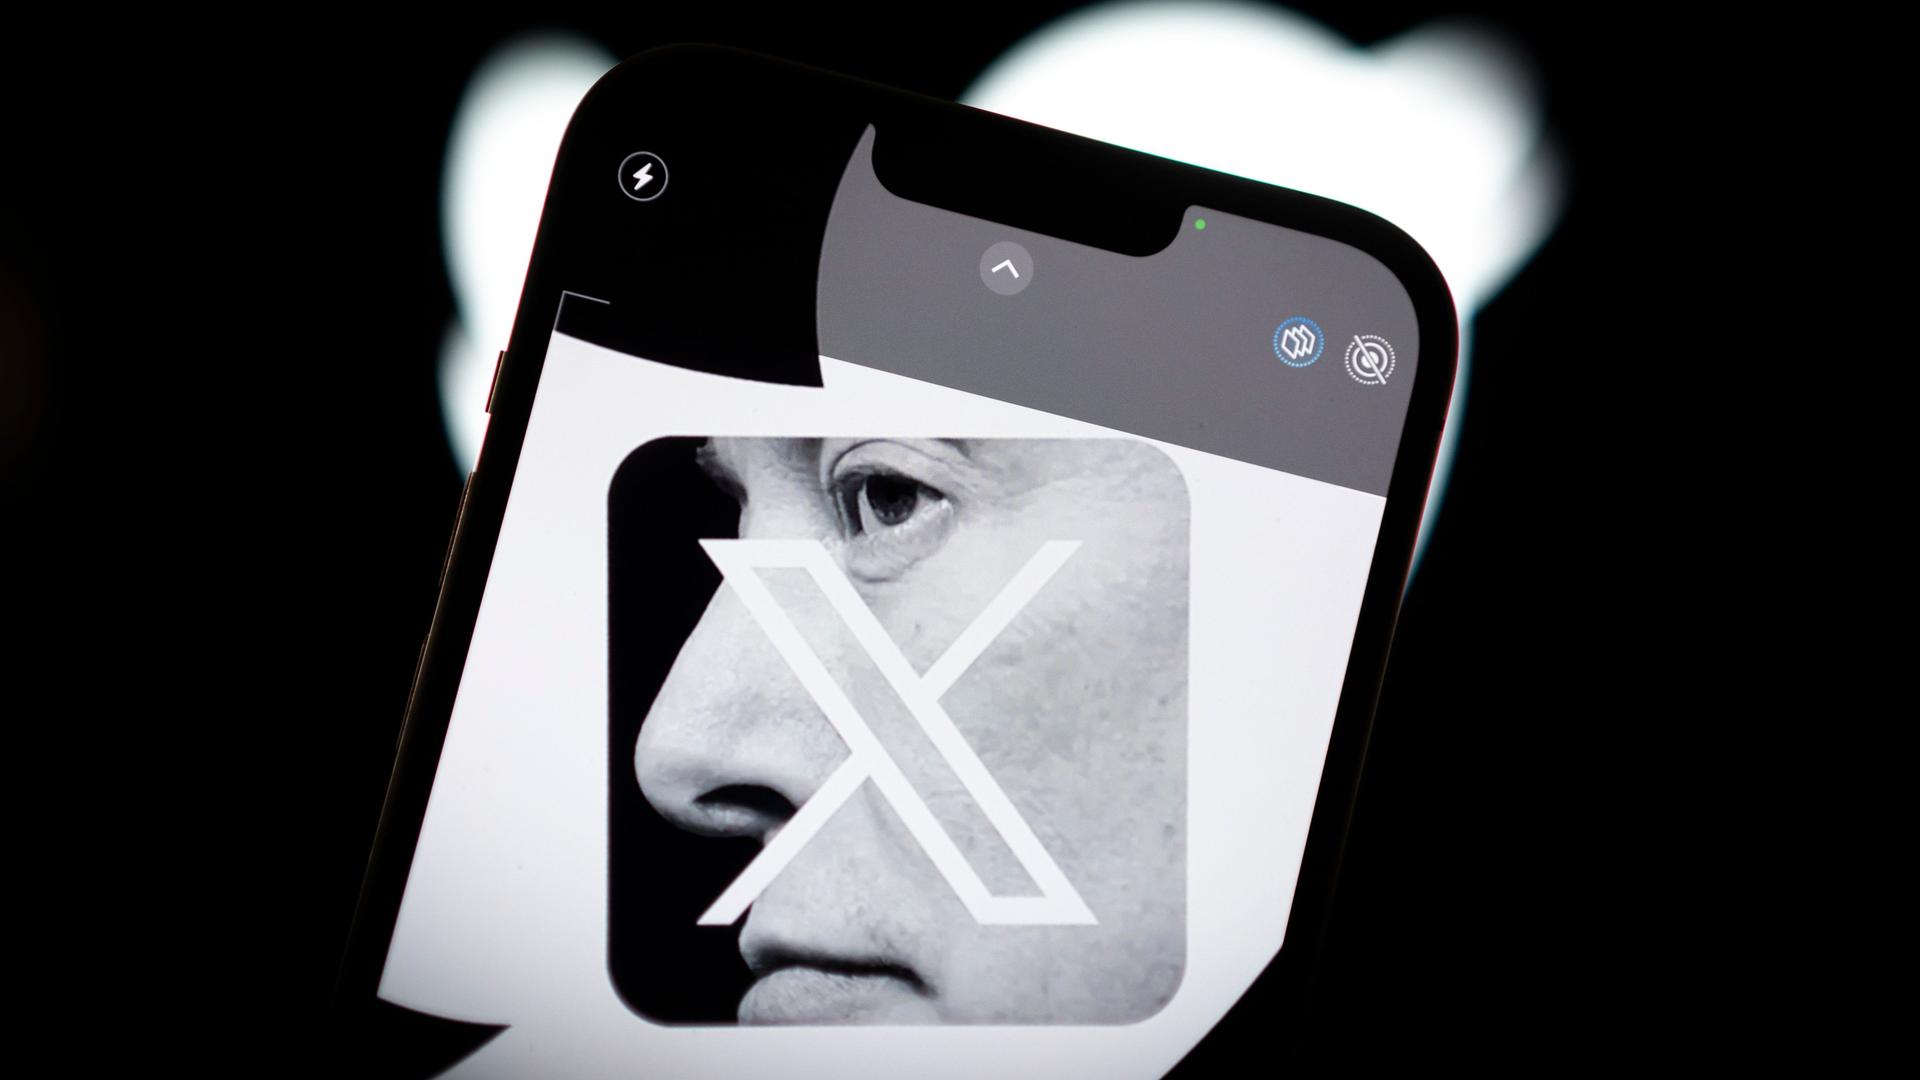 Schwarzweiße Fotocollage des Logos der X-App auf einem Smartphone, das mit einem Foto von Elon Musk im Profil unterlegt ist.